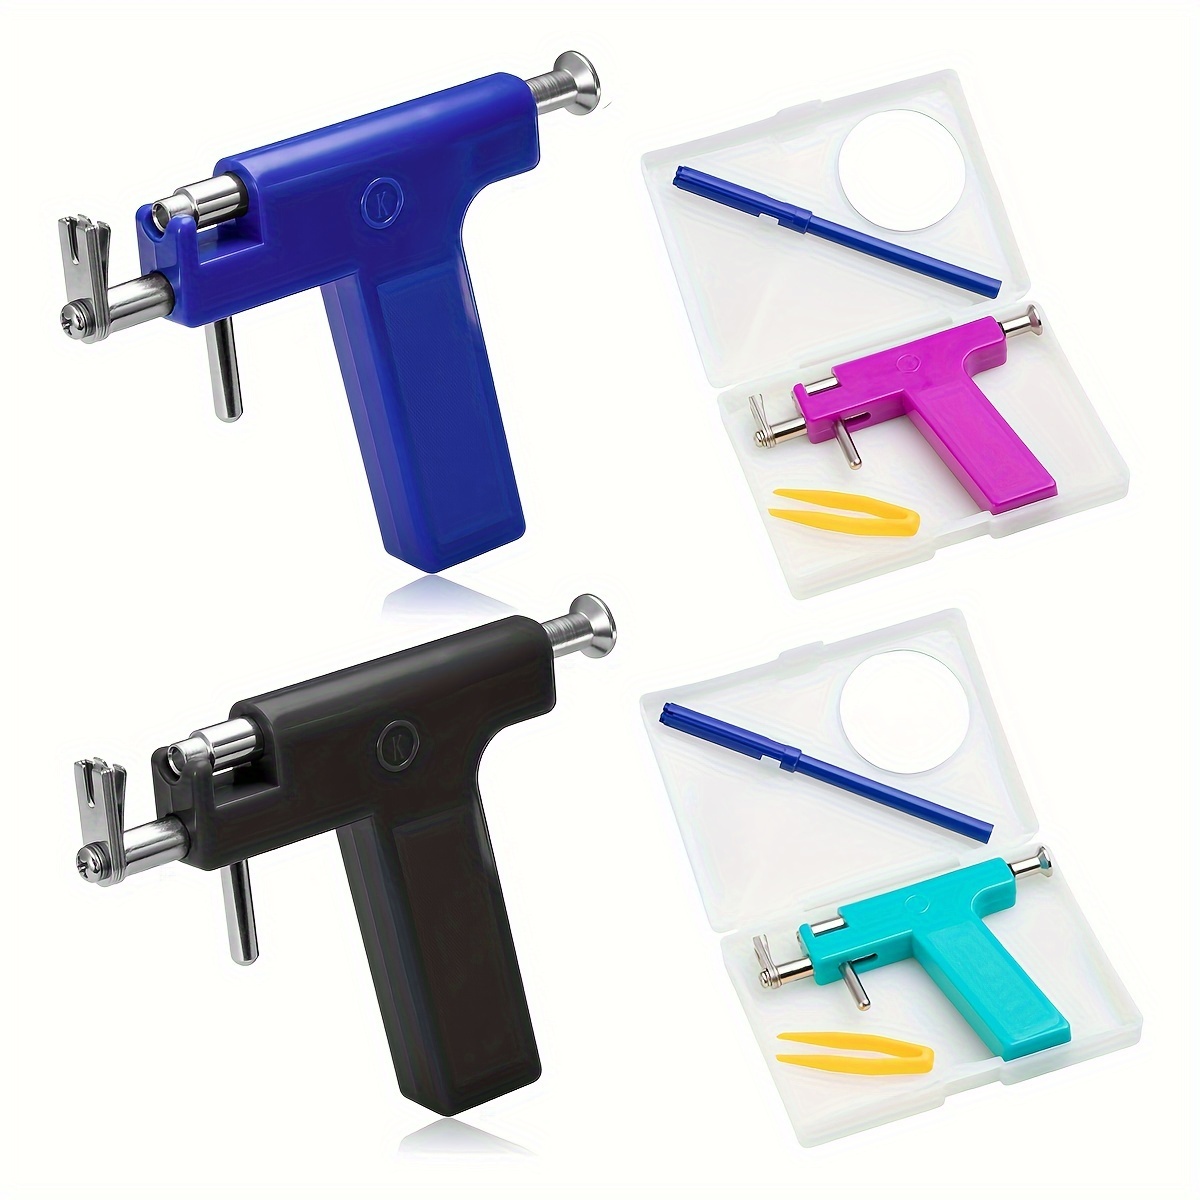 3pcs Set Ear Piercing Gun: Steel Ball Stud, Earring Set, Ear Stud Gun,  Safety Piercing Tool - Bag Drill Piercing Gun